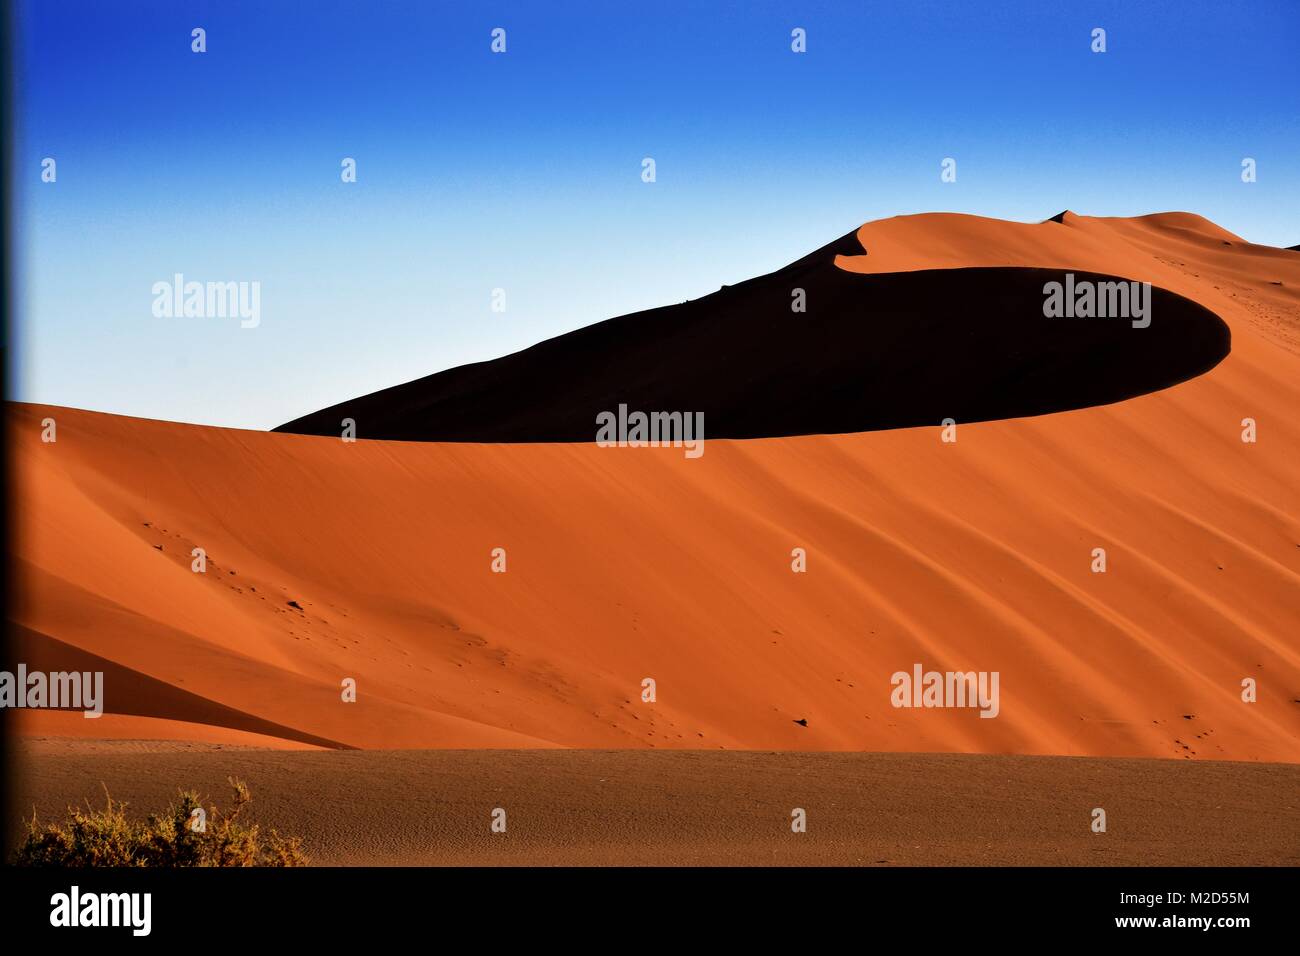 Swirling orange sand dune in Sossusvlei, Namib Desert, Namibia Stock Photo